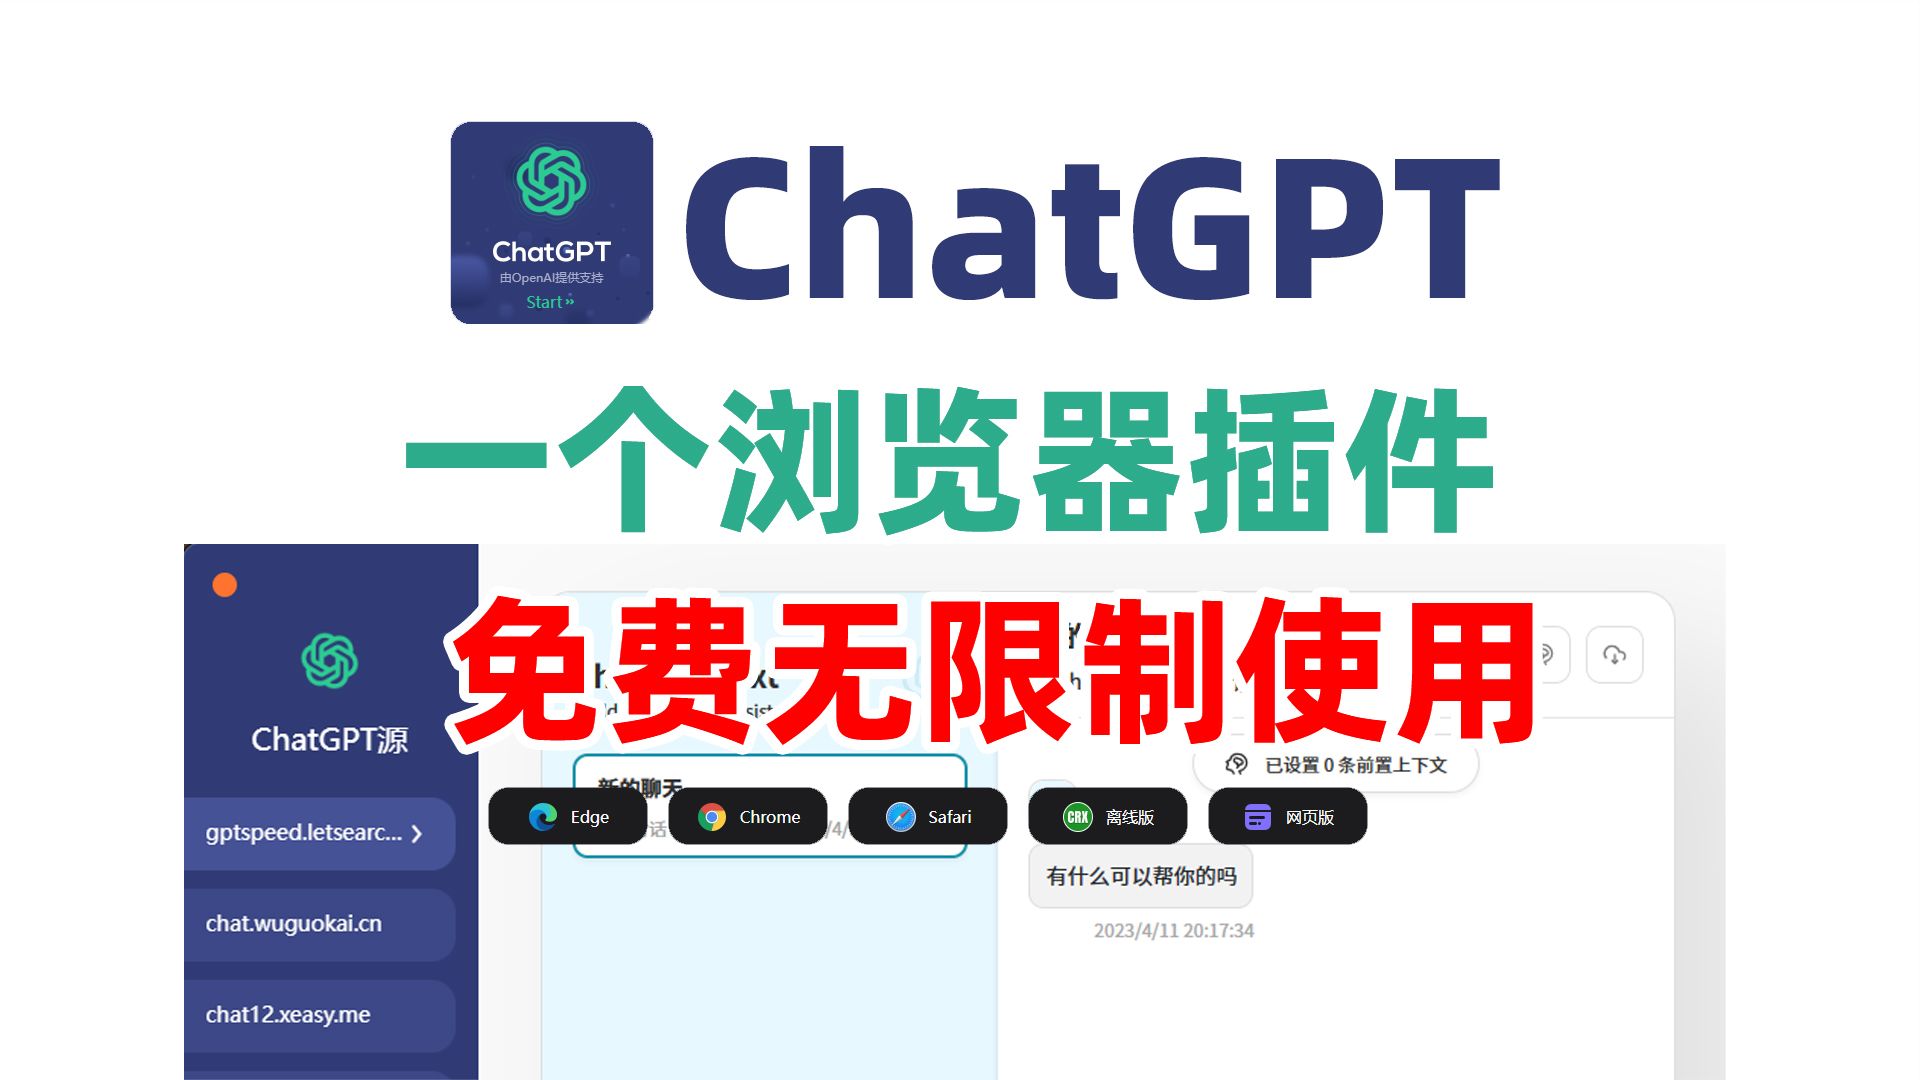 一个浏览器新标签页插件让你免费无限制使用最新版ChatGPT